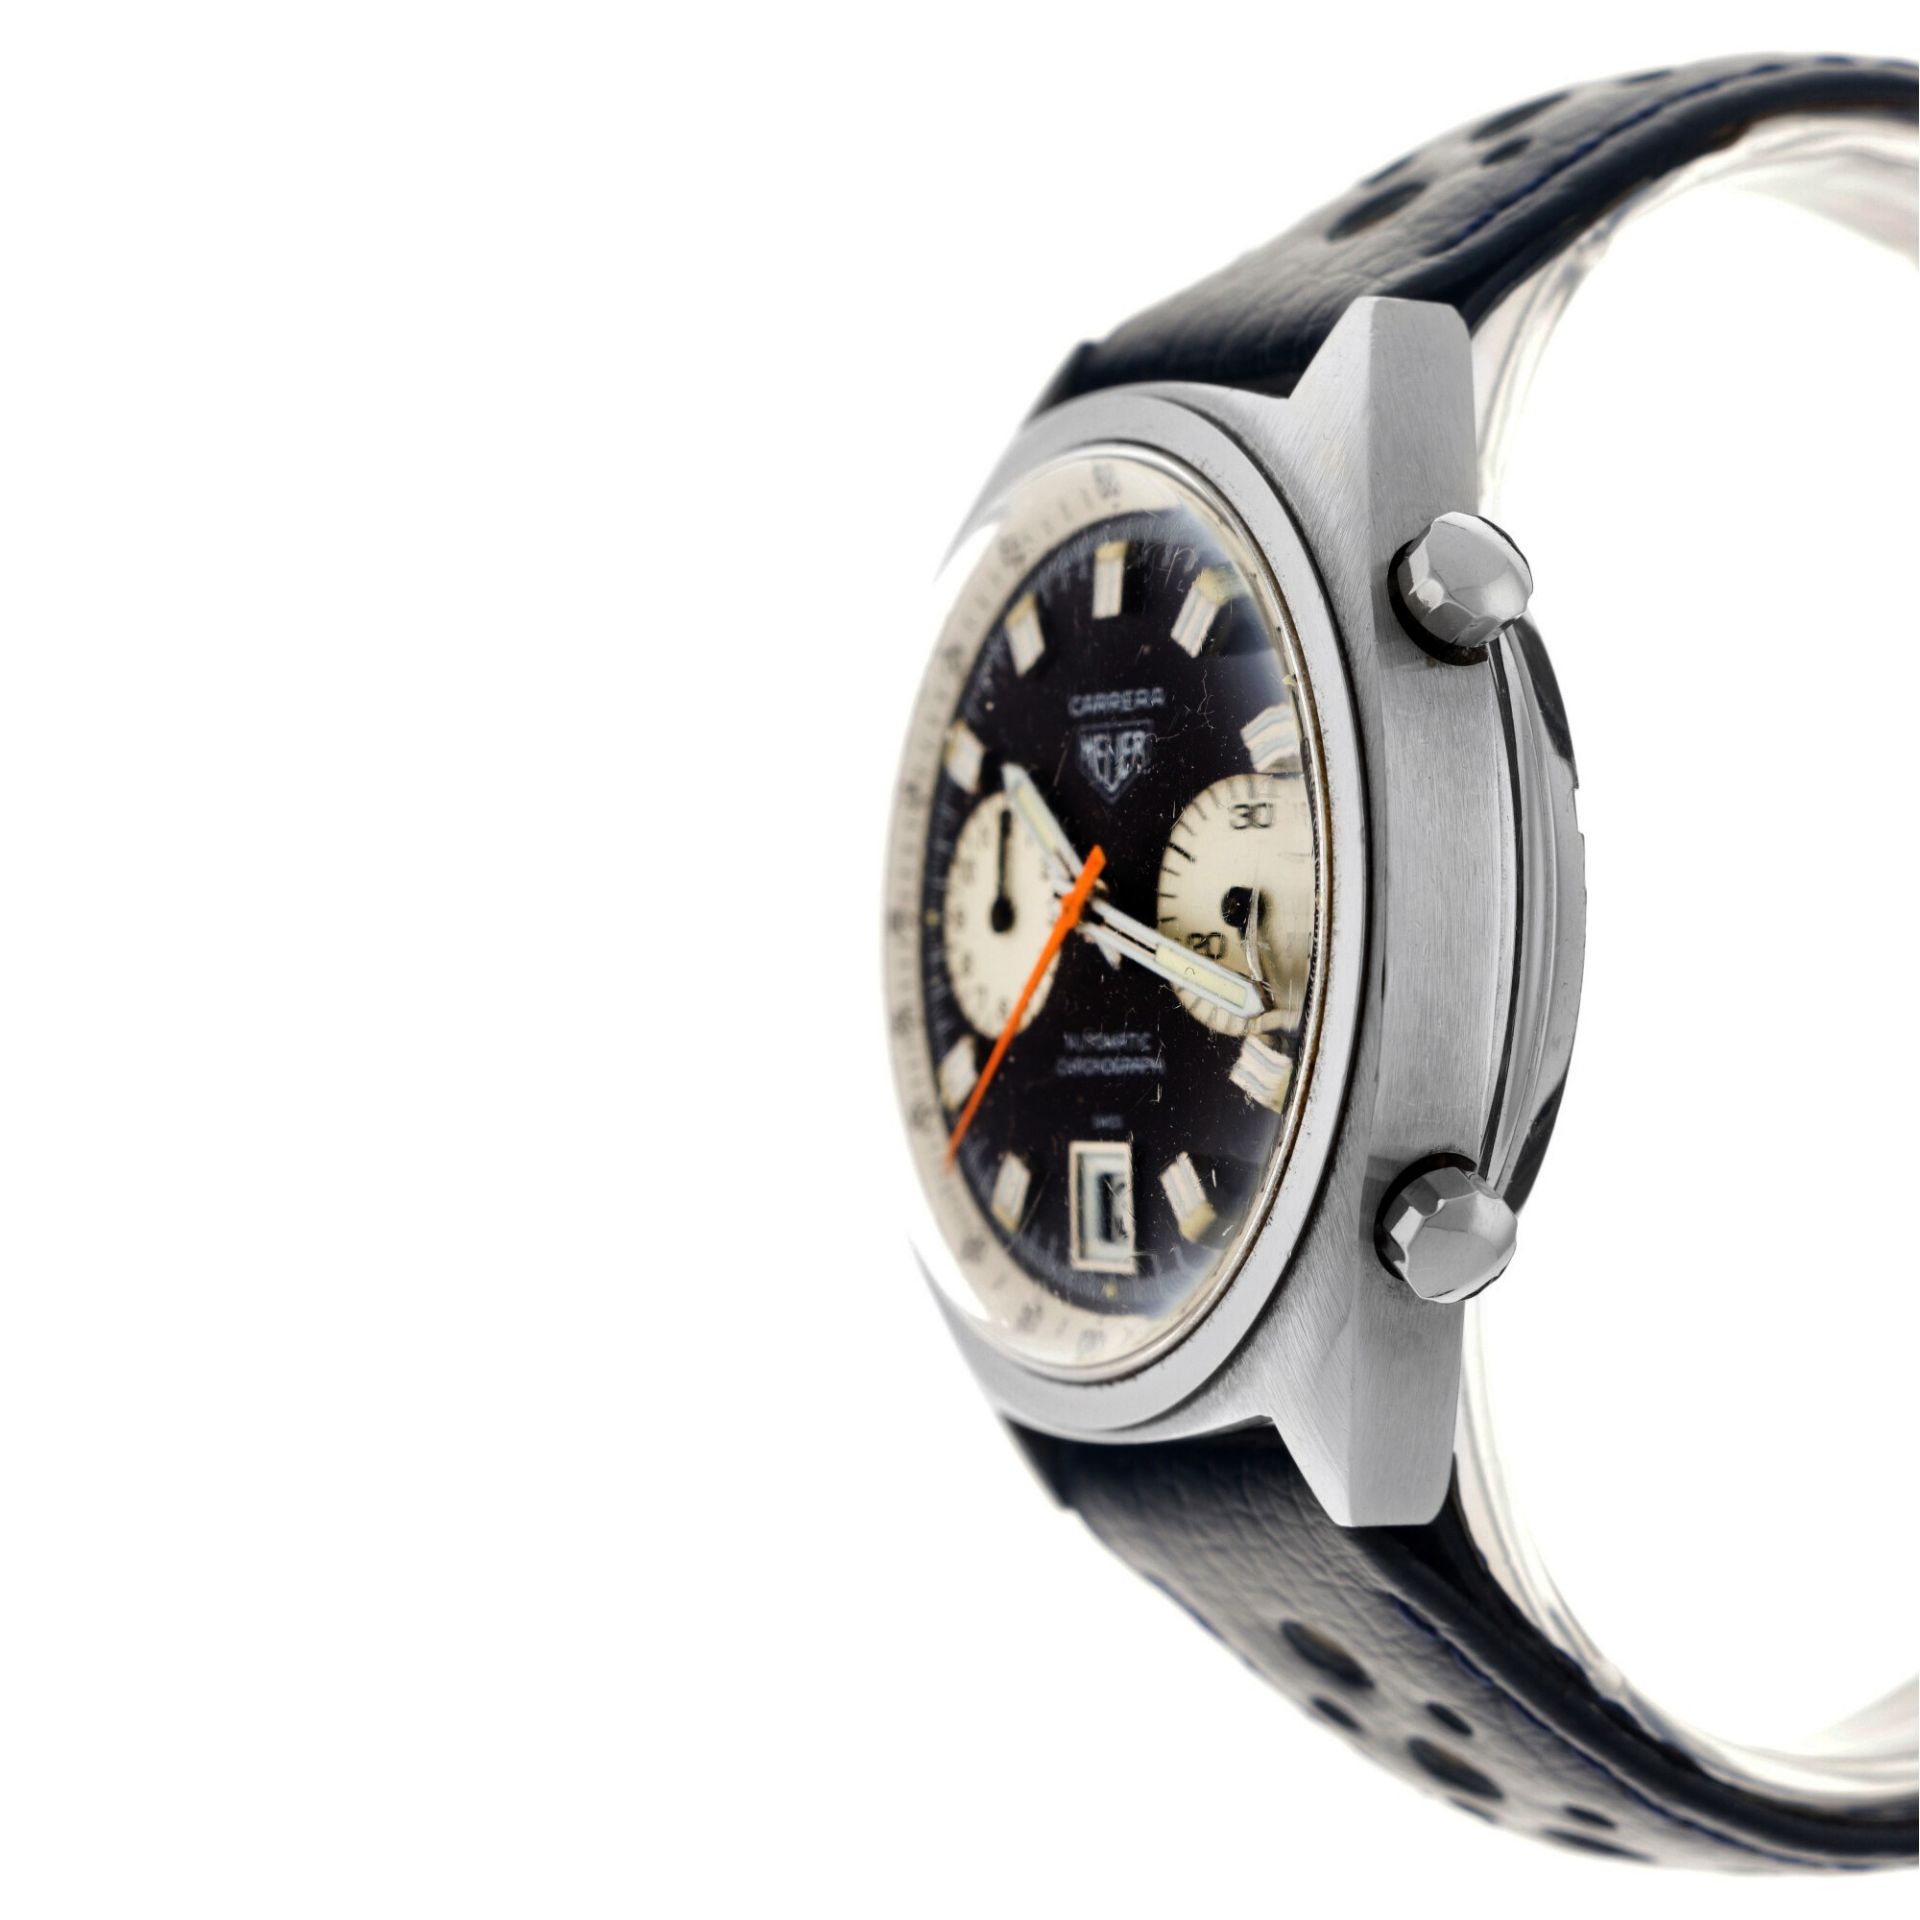 Heuer Carrera 1153 - Men's watch - approx. 1970. - Image 5 of 5